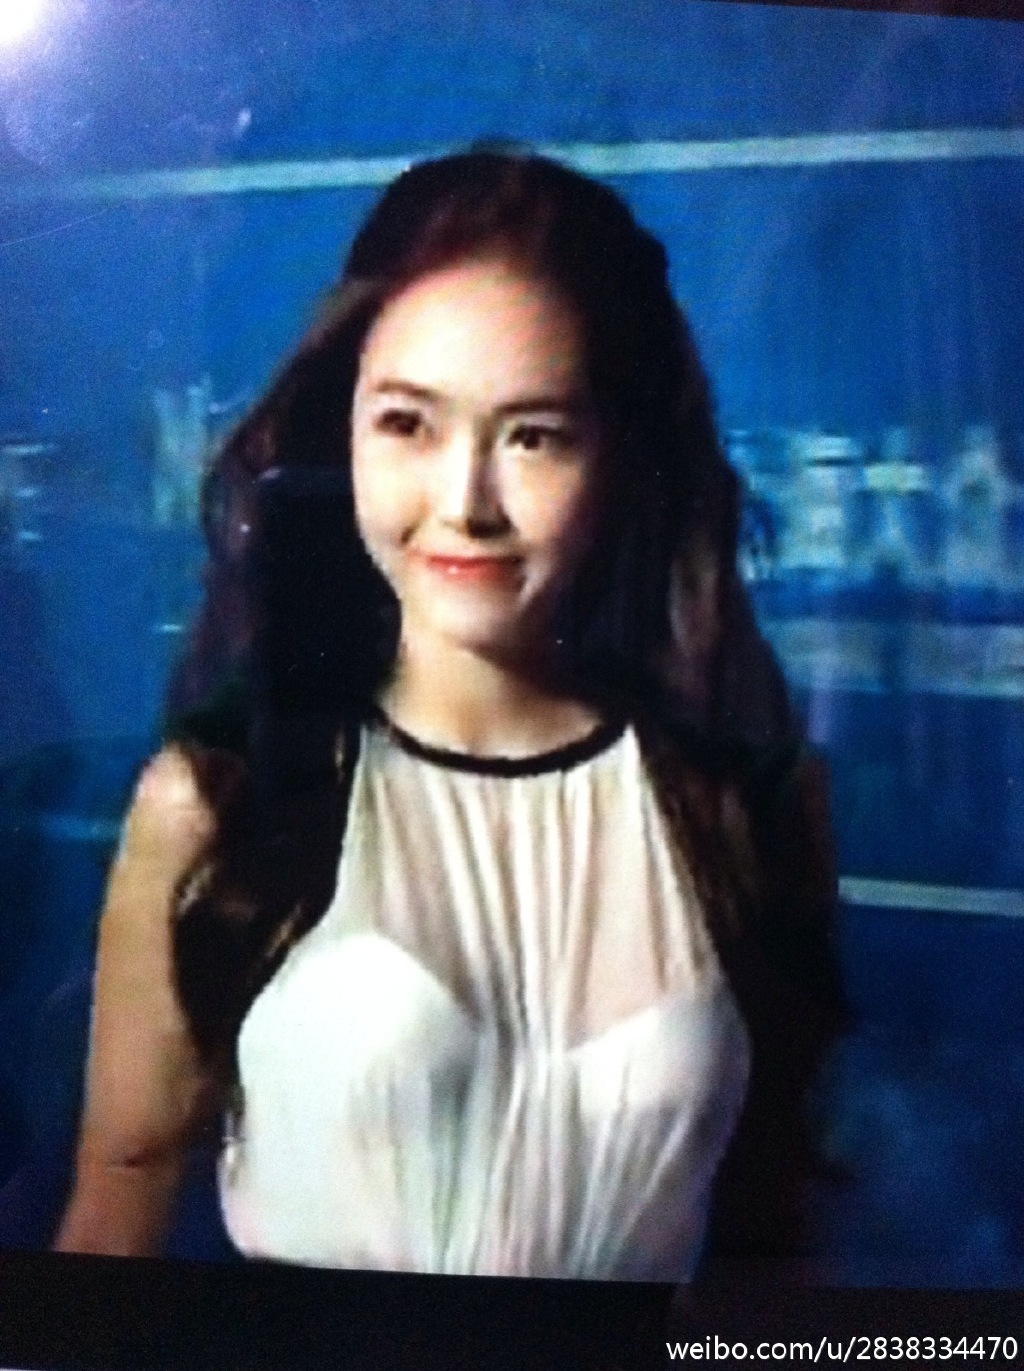 [PIC][07-10-2013]Jessica khởi hành đi Macao để tham dự "10th Huading Award" vào sáng nay A92d8c06jw1e9ctmubc8uj20x718gdtp